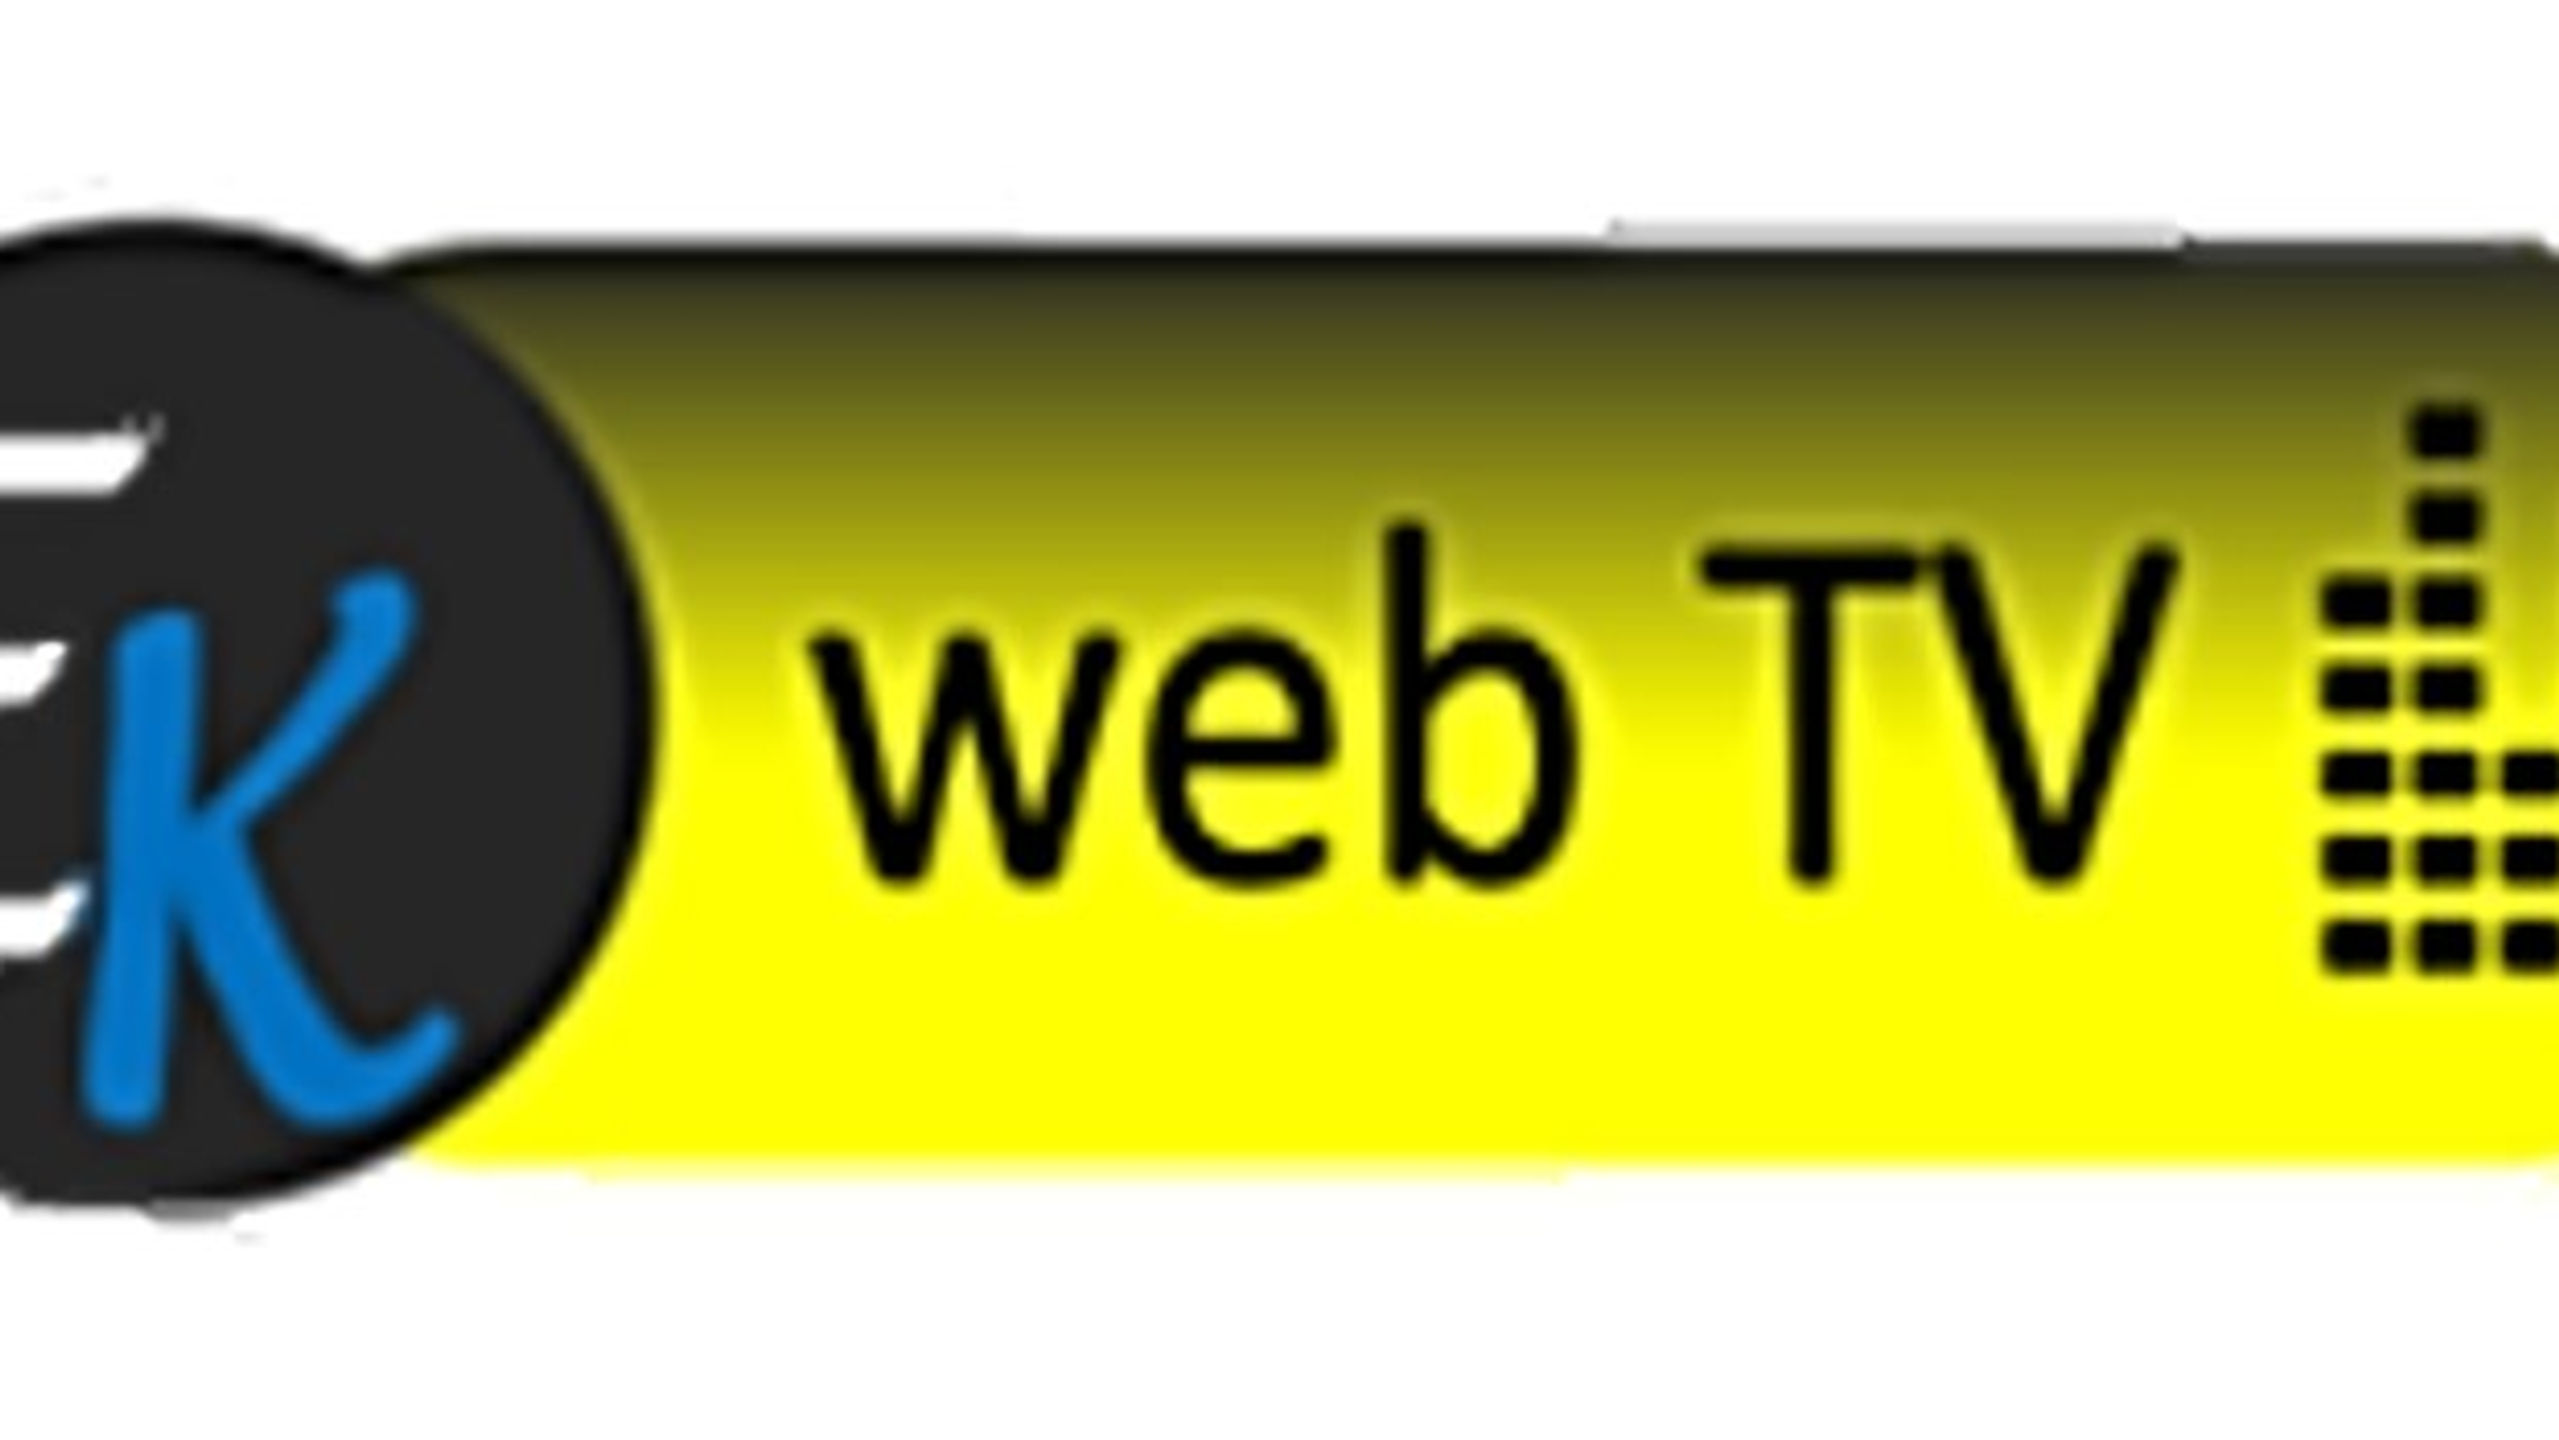 EK web TV - YOUTUBE